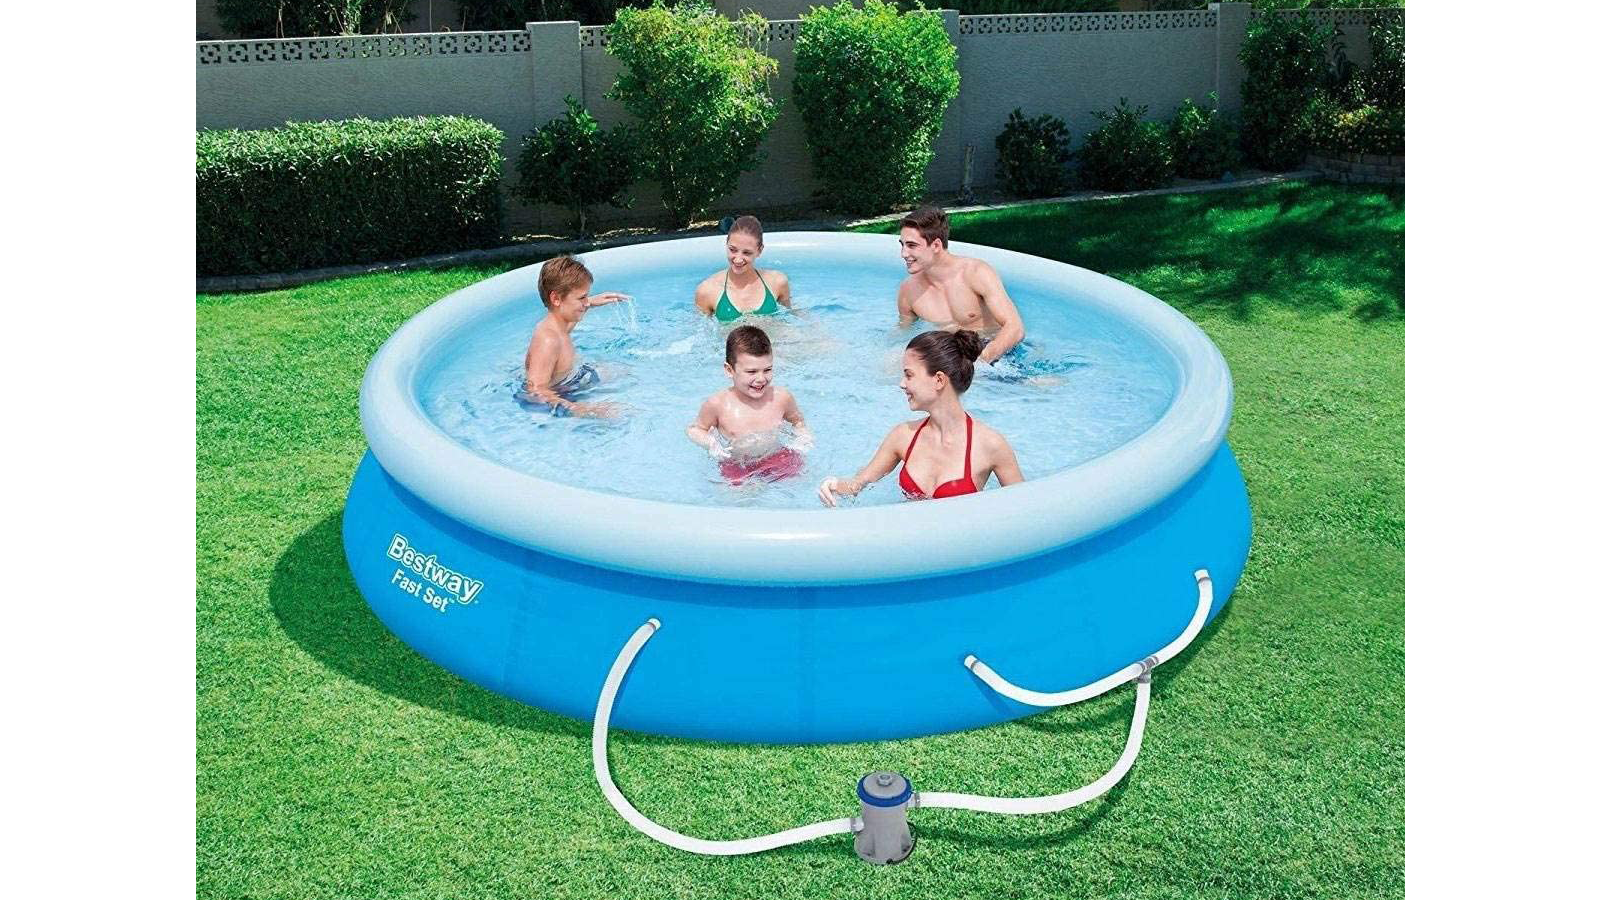 Sebuah keluarga menikmati berenang di kolam di atas tanah di halaman belakang mereka